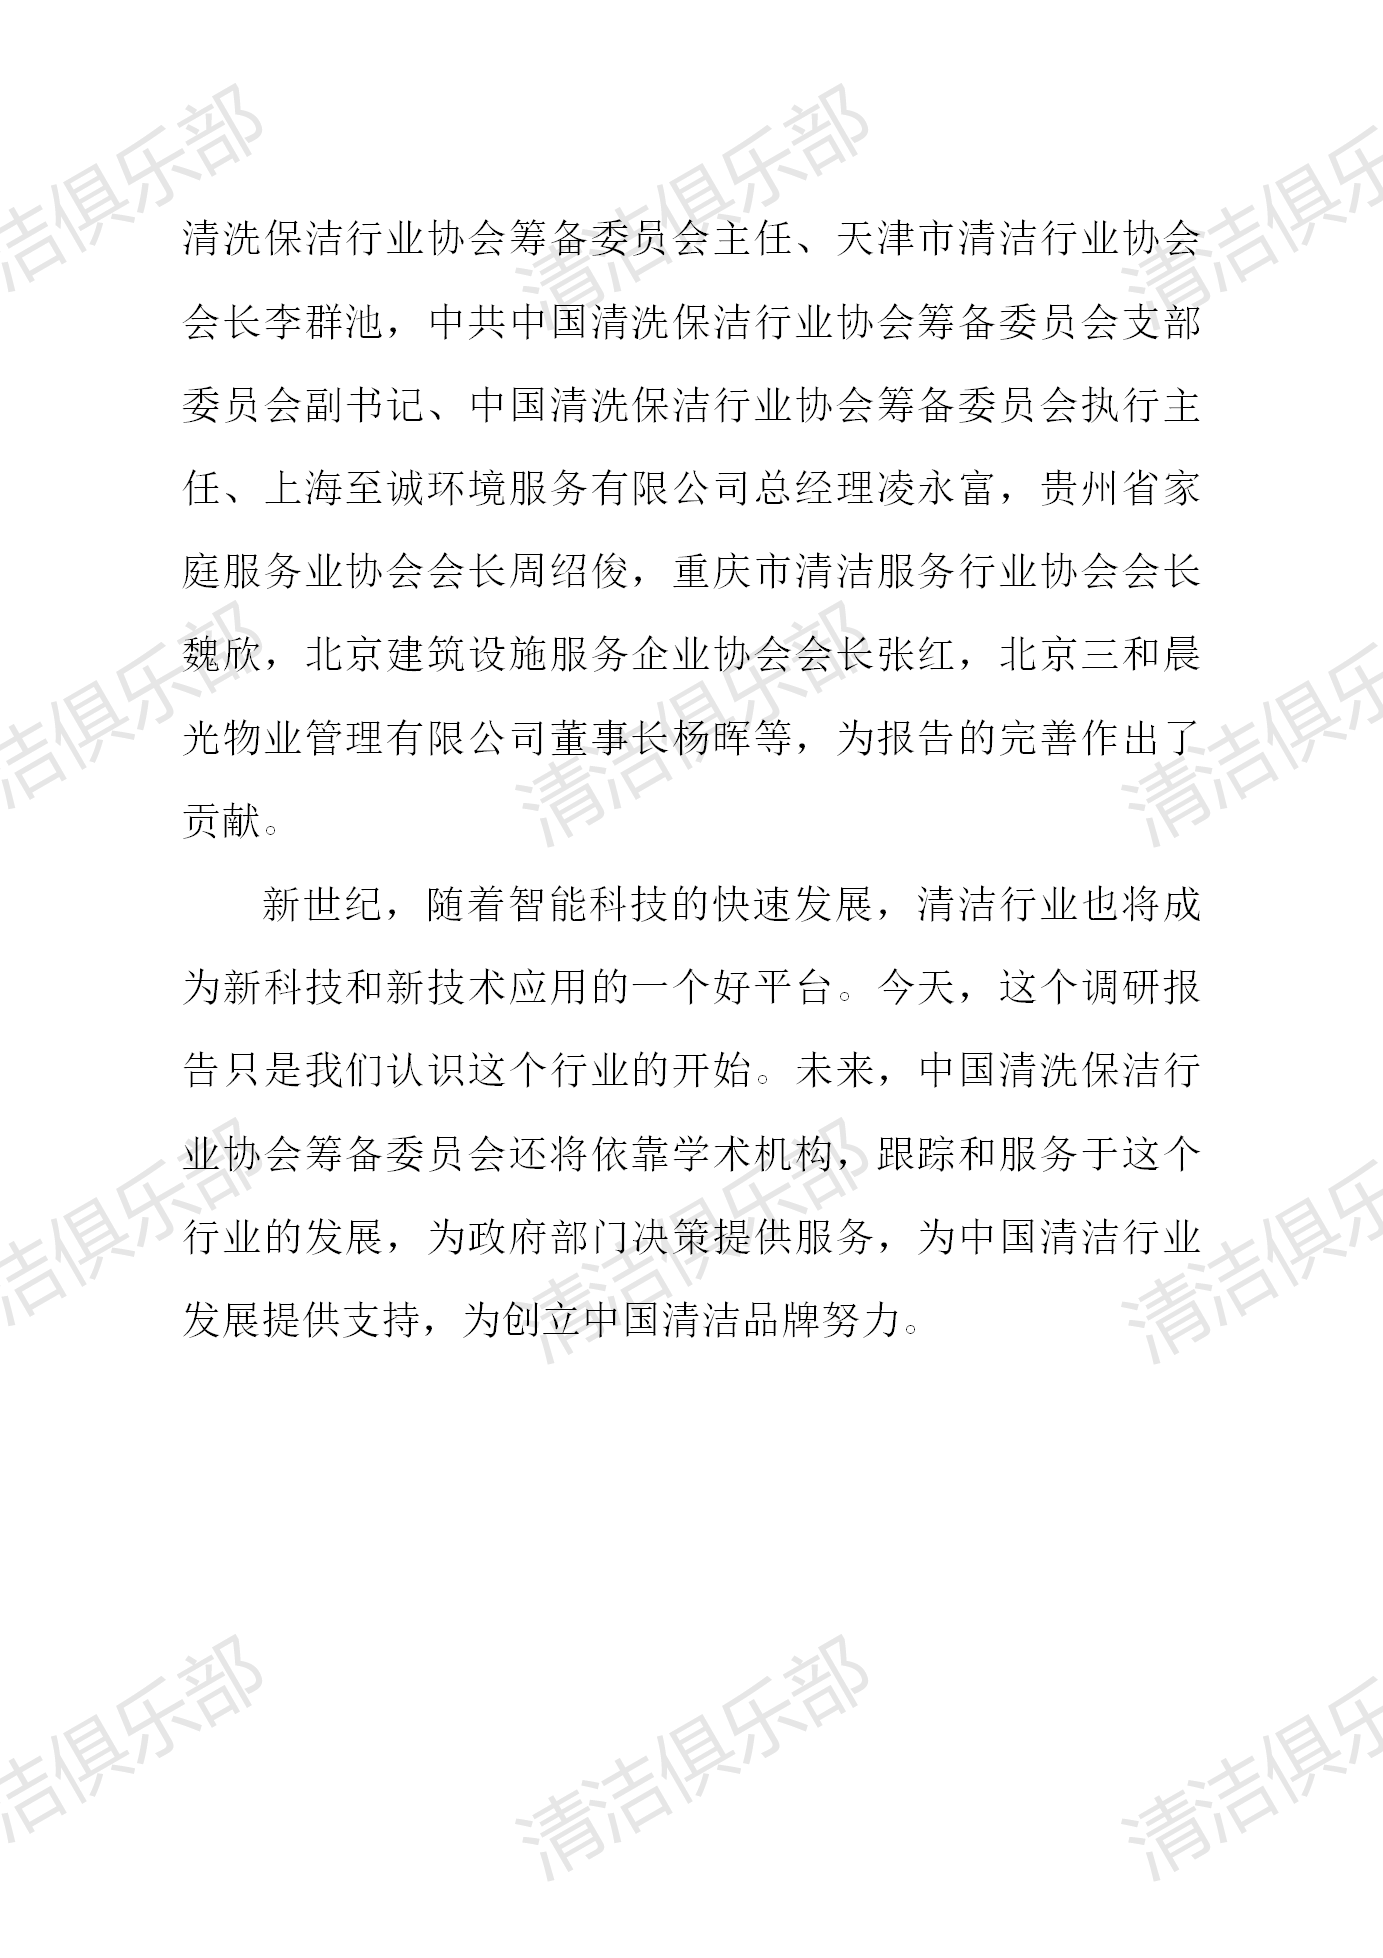 中国清洗保洁行业调研报告排版_07.png